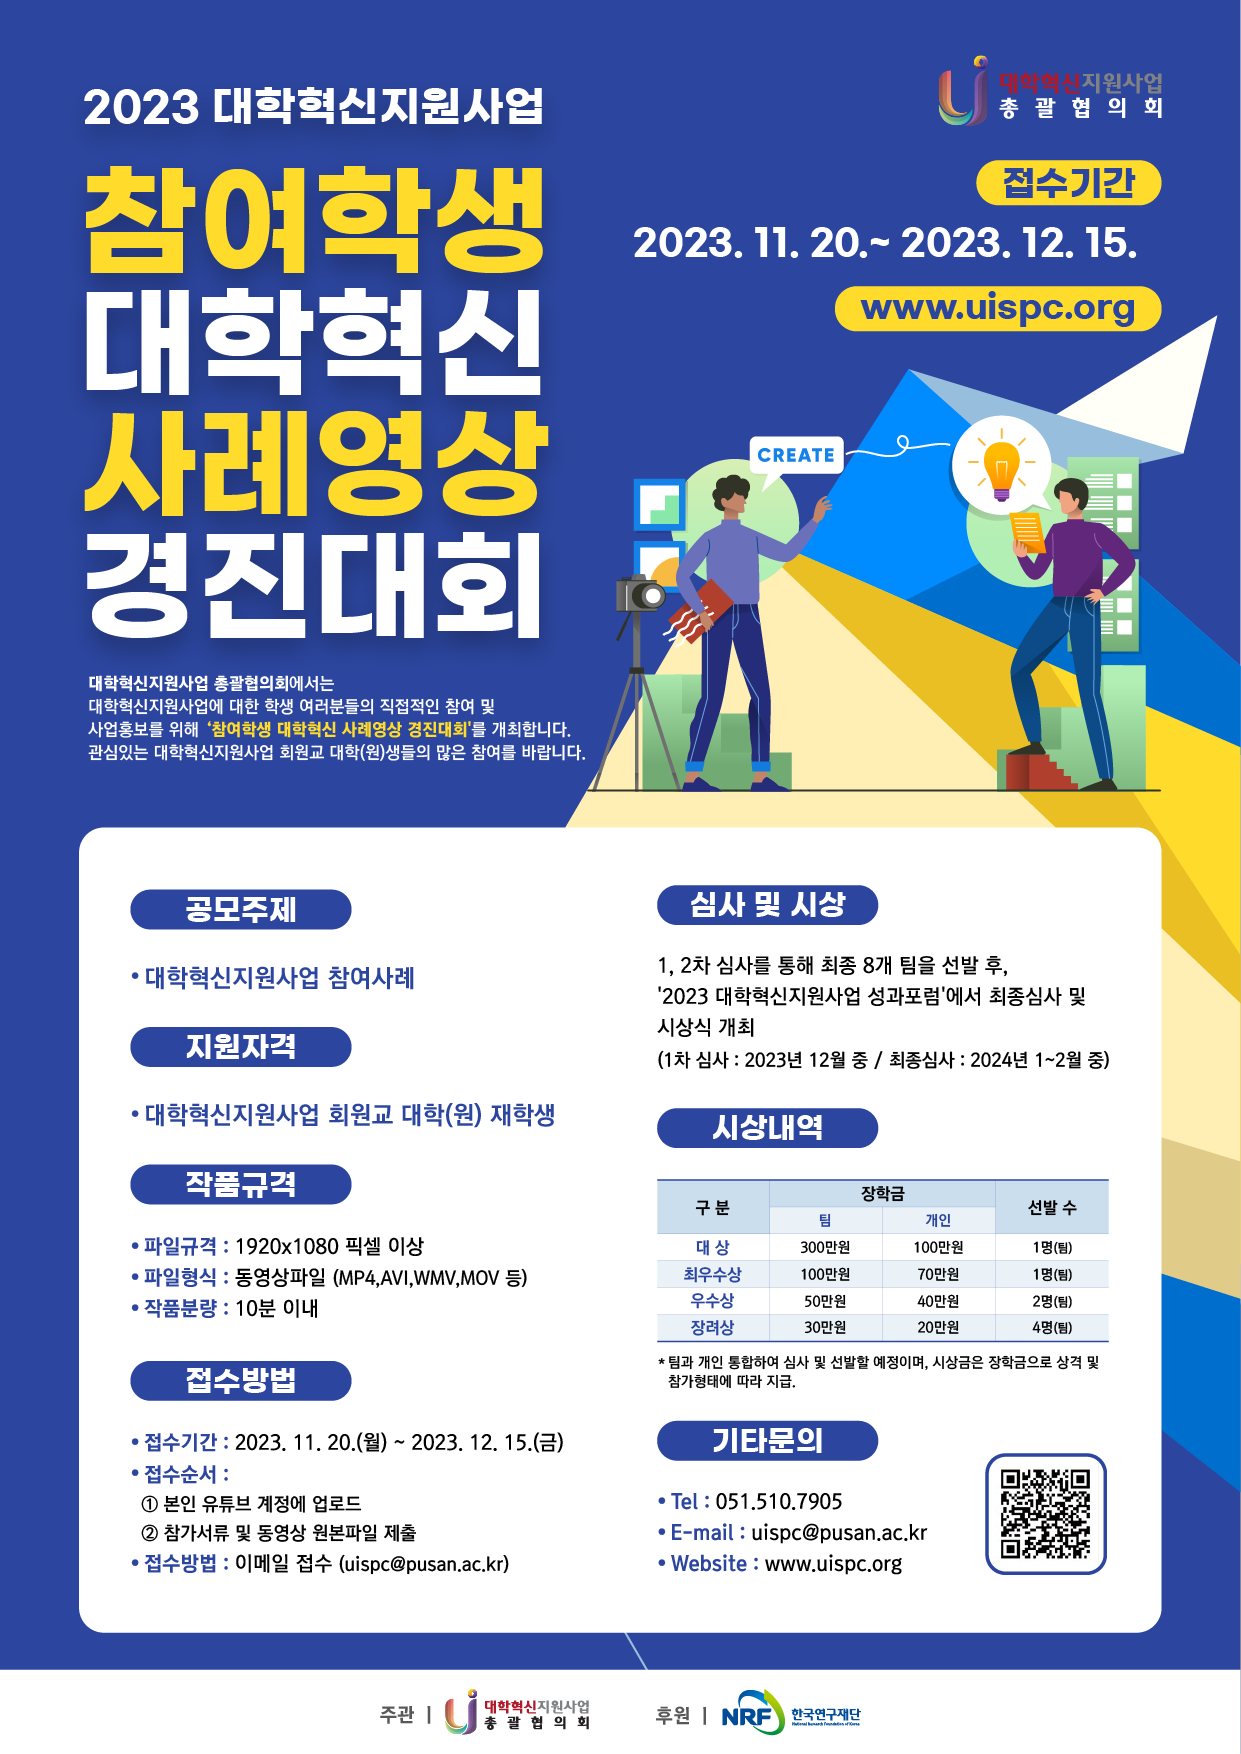  붙임 3. 경진대회 포스터(웹용).png